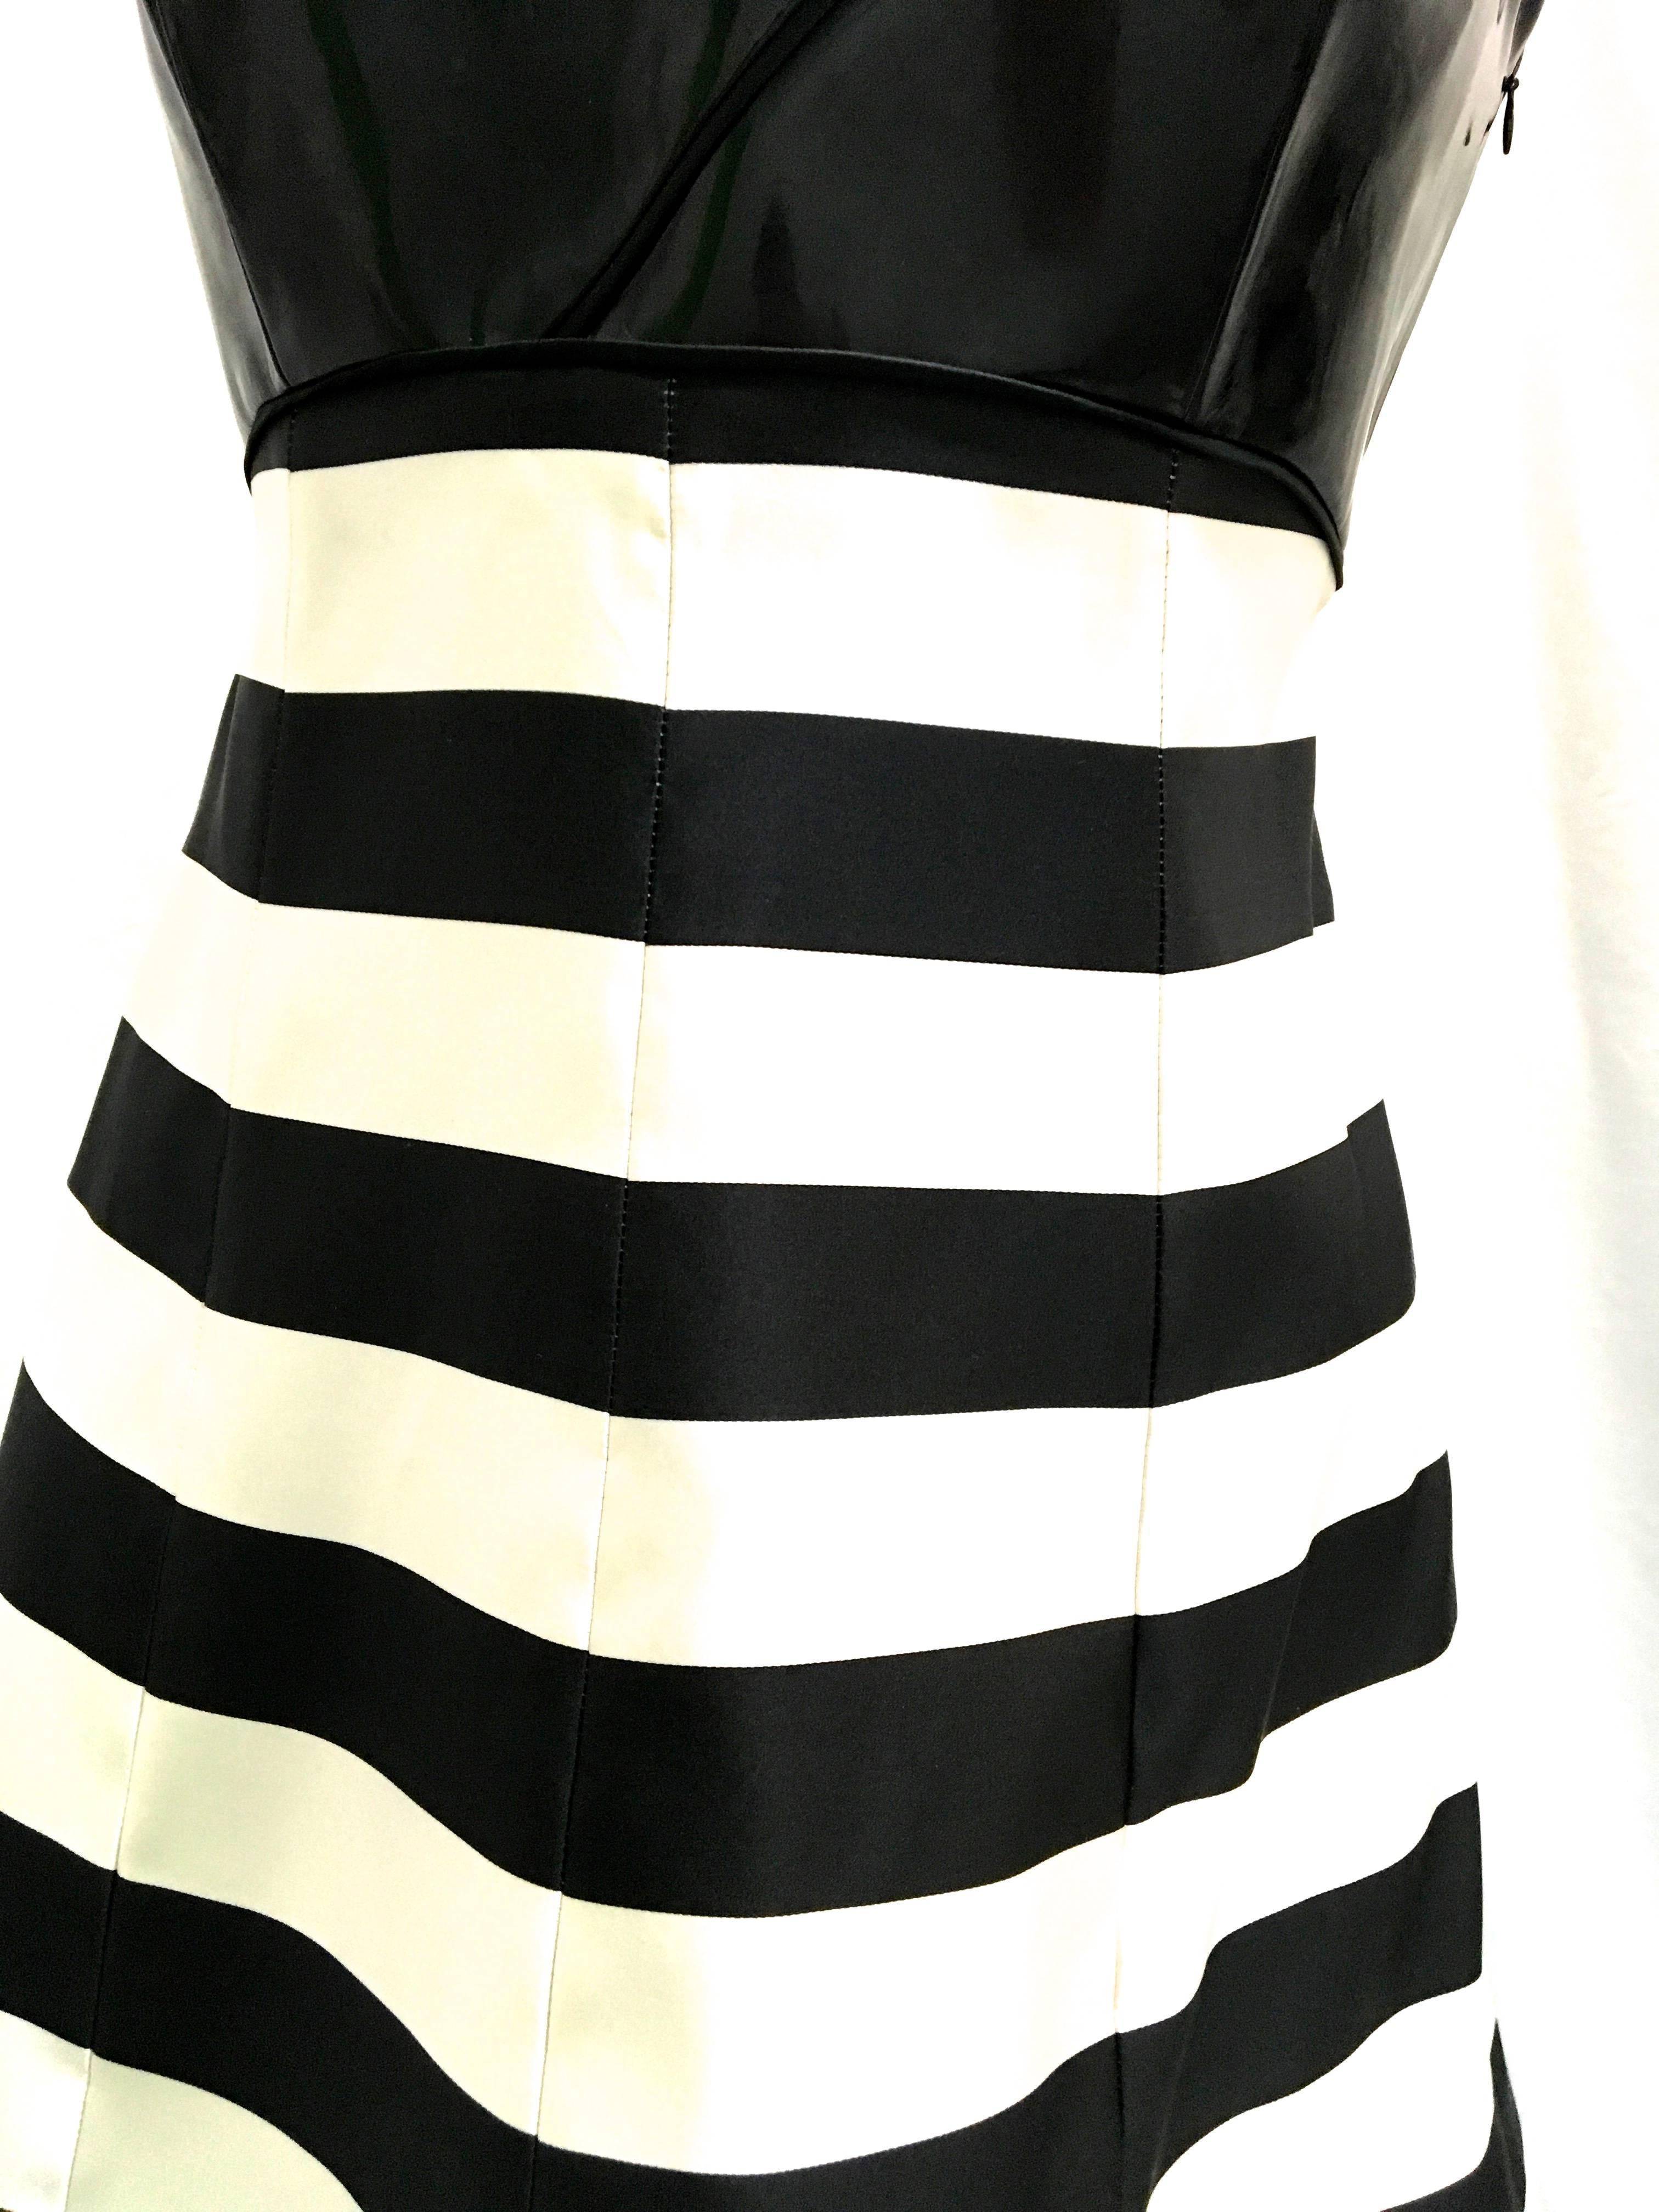 Giorgio Armani Black Label Cocktail Dress For Sale 2